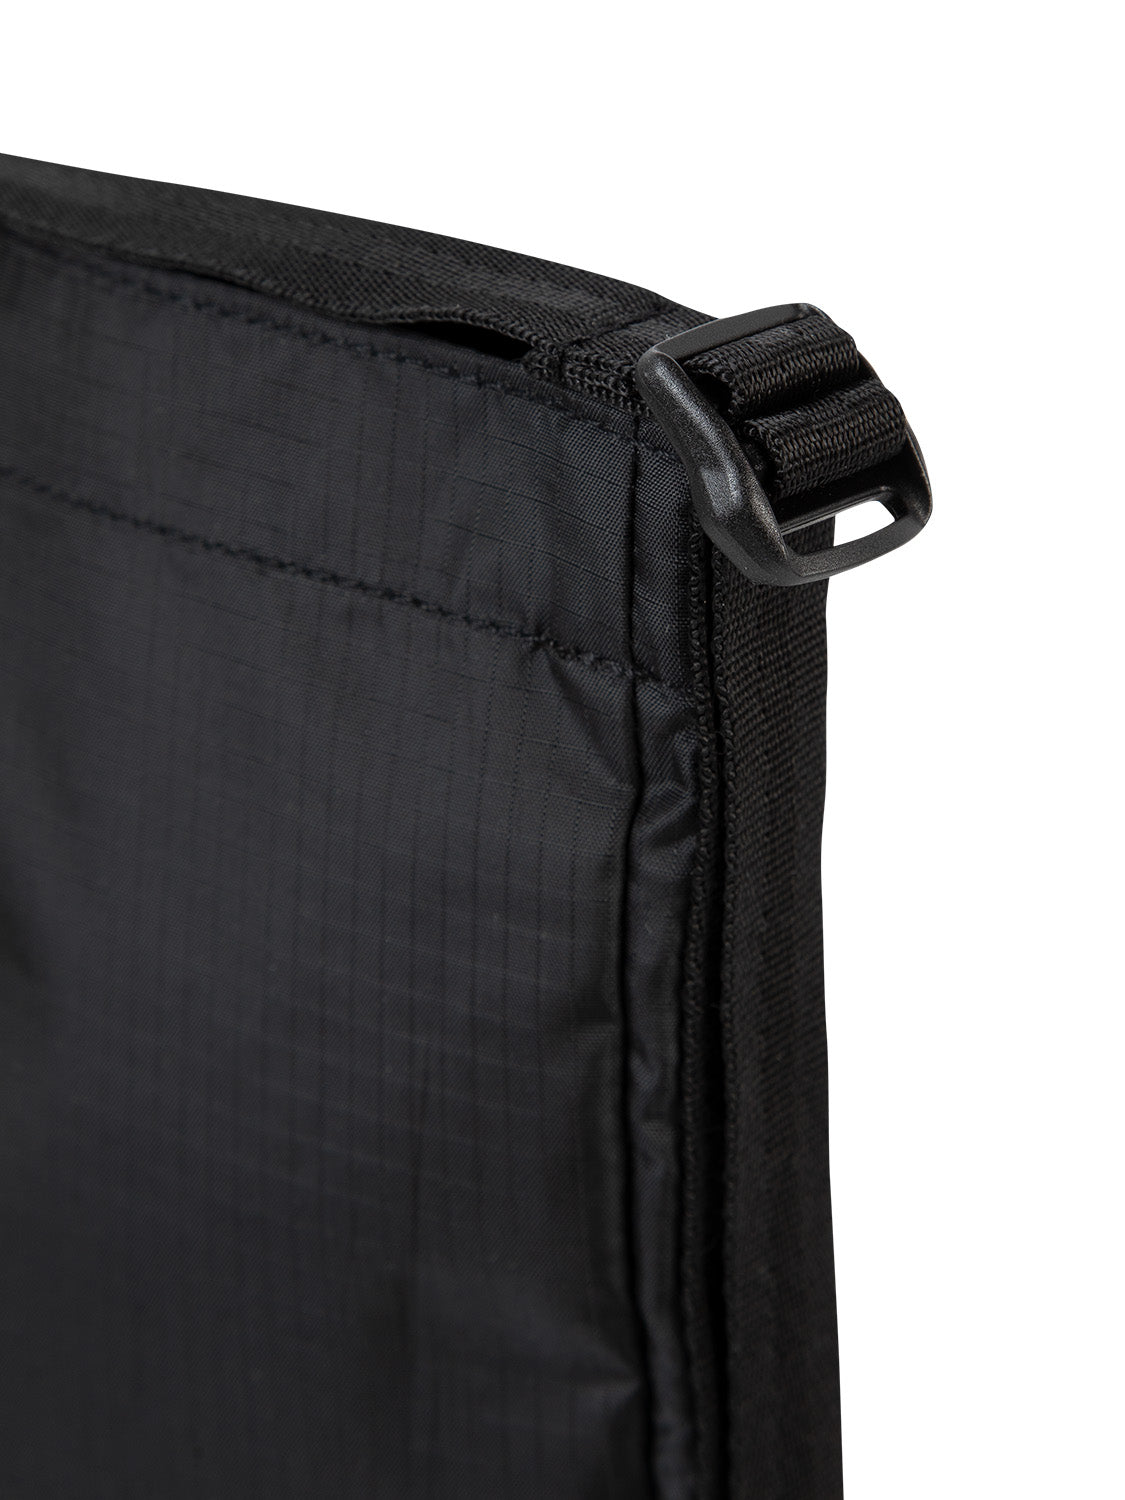 AEVOR-chest-bag-Mussette-Ripstop-Black-detail